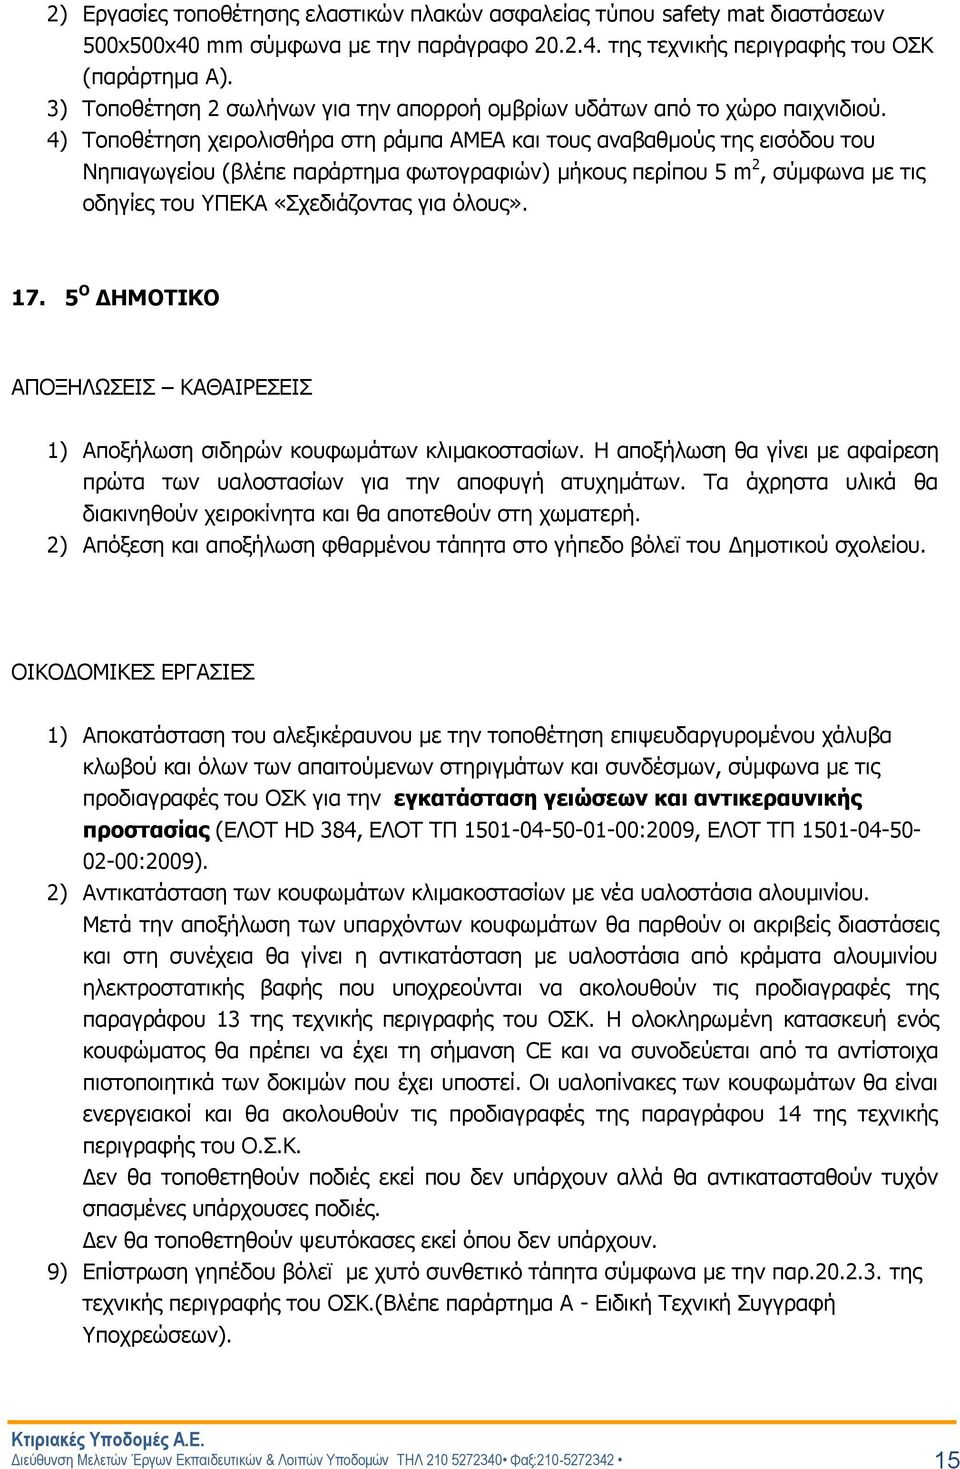 4) Τοποθέτηση χειρολισθήρα στη ράμπα ΑΜΕΑ και τους αναβαθμούς της εισόδου του Νηπιαγωγείου (βλέπε παράρτημα φωτογραφιών) μήκους περίπου 5 m 2, σύμφωνα με τις οδηγίες του ΥΠΕΚΑ «Σχεδιάζοντας για